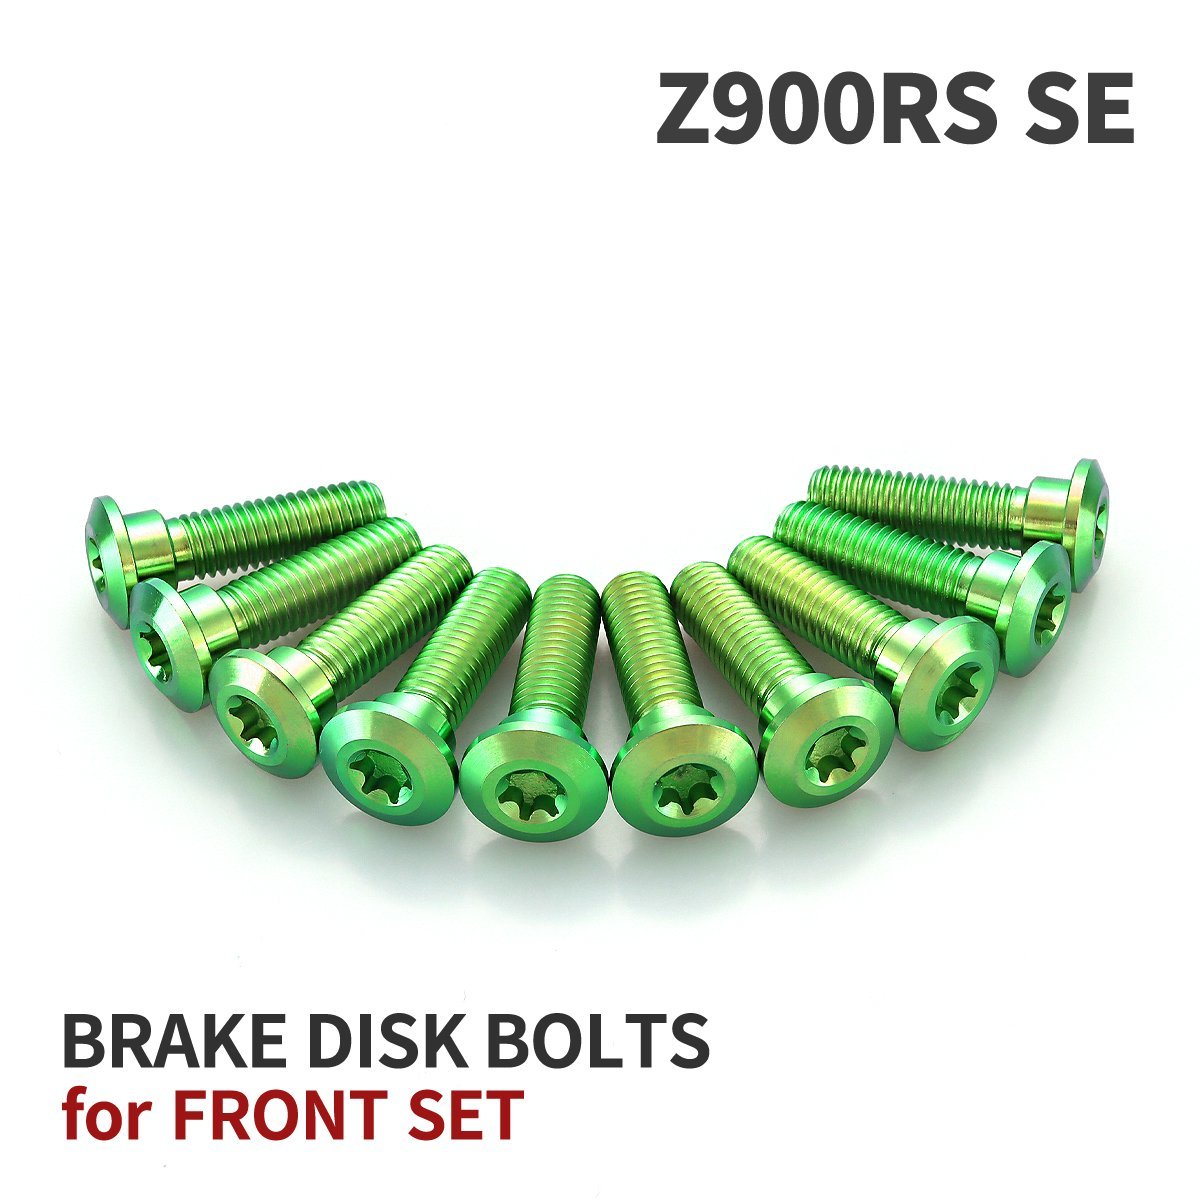 Z900RS SE 64チタン ブレーキディスクローター ボルト フロント用 10本セット M8 P1.25 カワサキ車用 グリーン JA22002_画像1